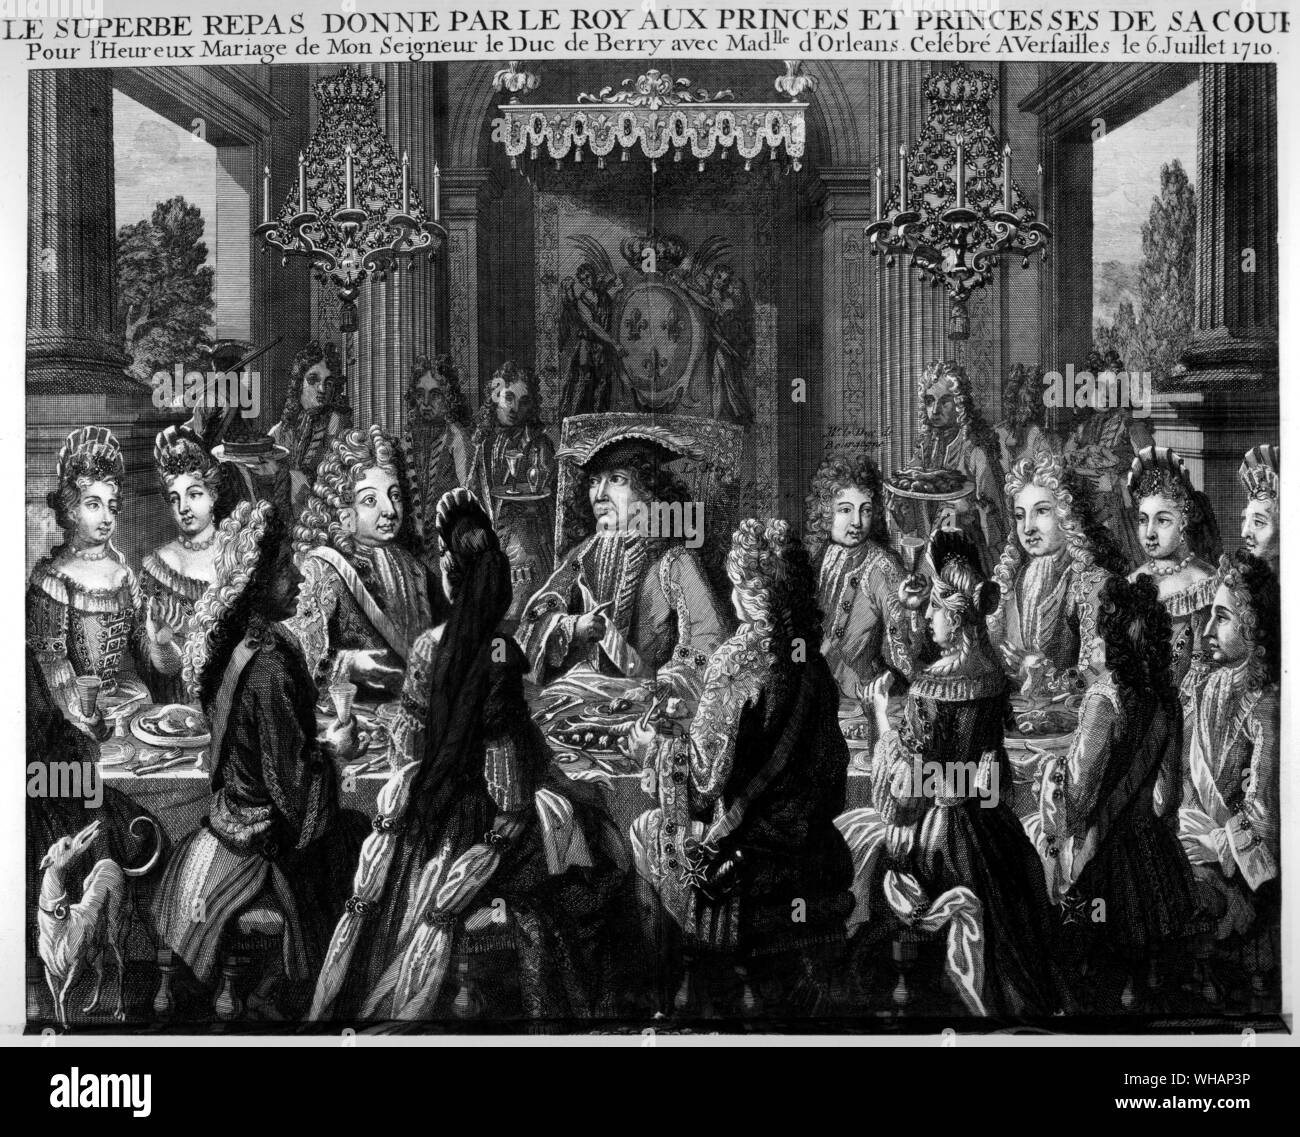 La magnífica comida ofrecida por el Rey de los príncipes y princesas de su corte. Para el matrimonio de Le Duc de Berry con Mademoiselle d'Orleans celebra en Versaille . El 6 de julio de 1710 Foto de stock